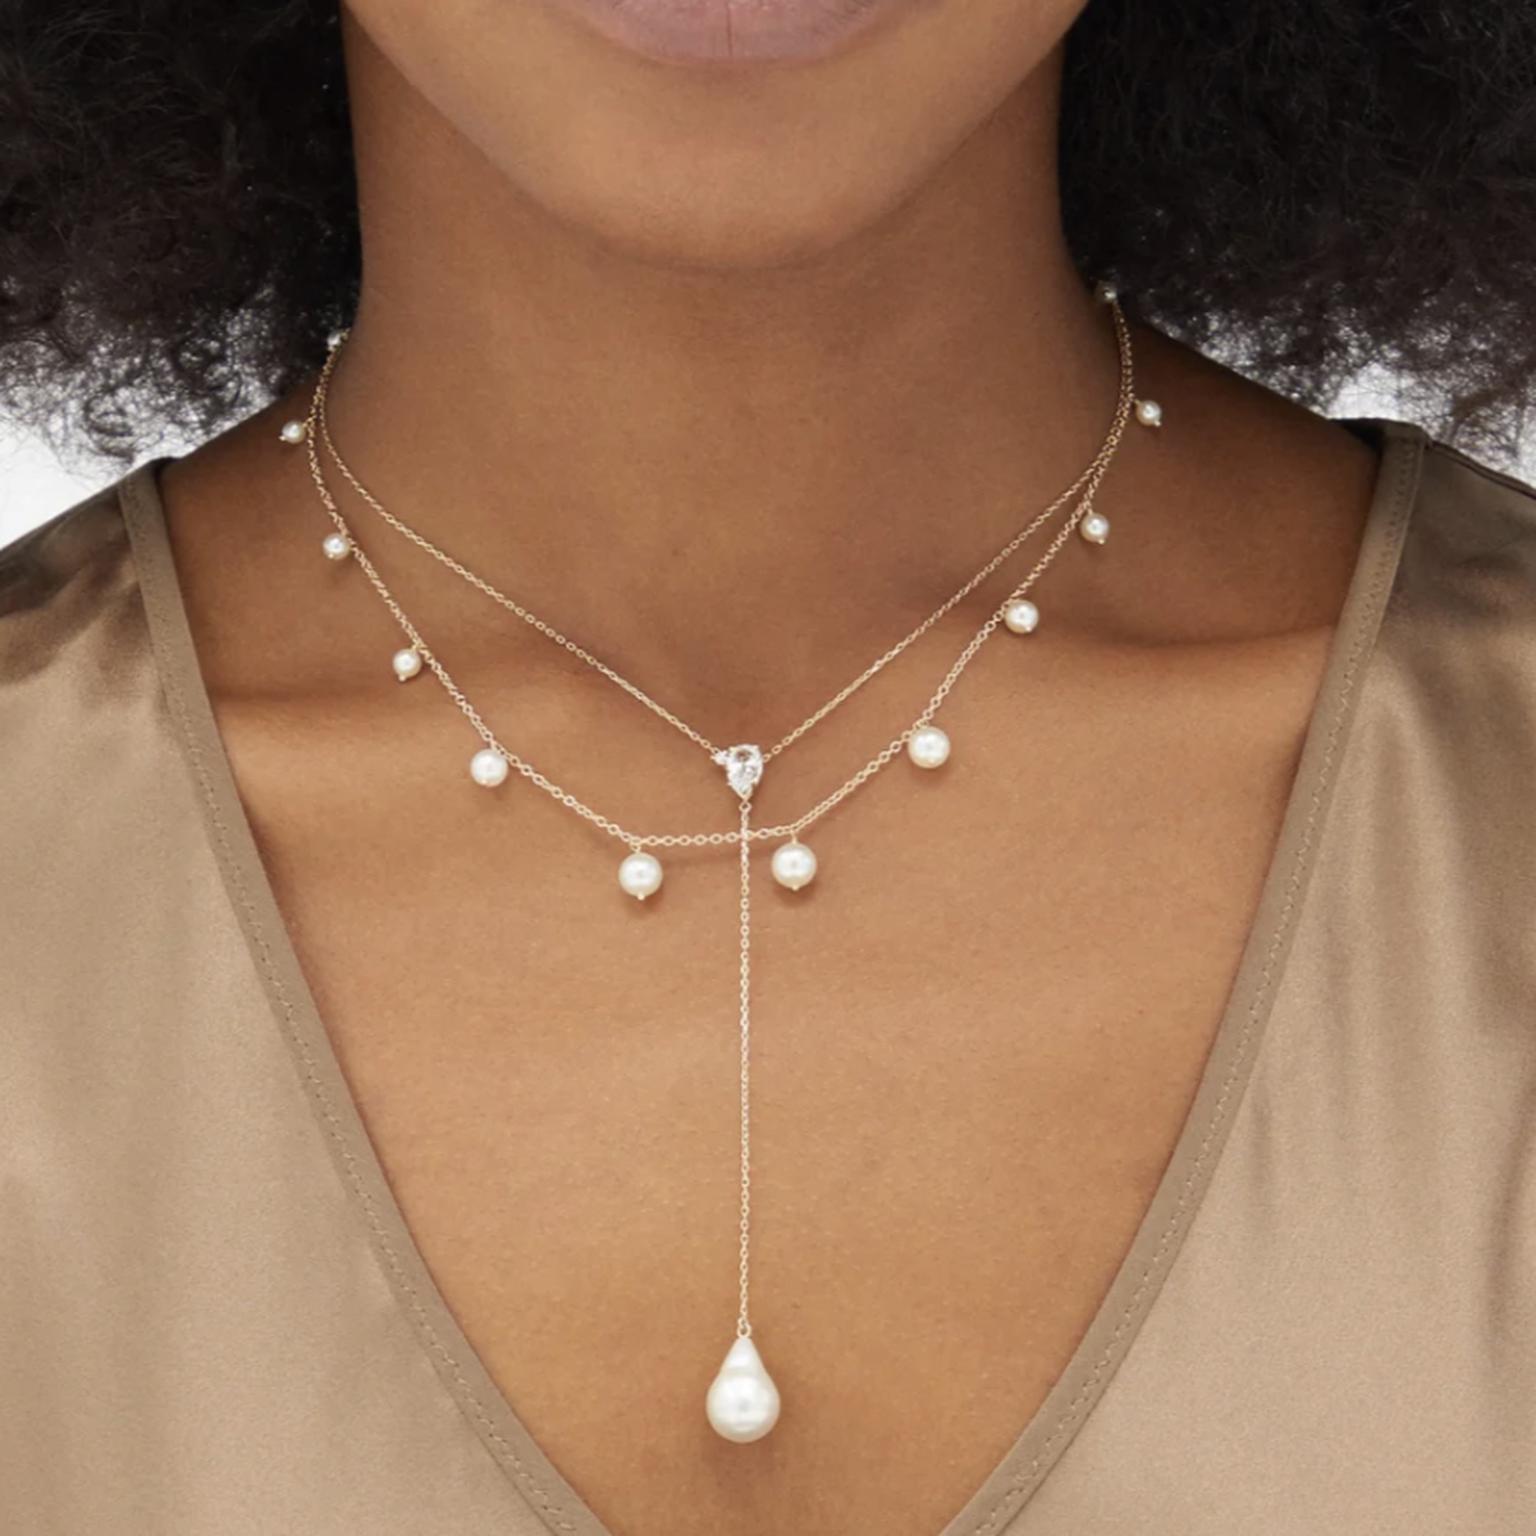 Pearl and topaz necklace by Mizuki